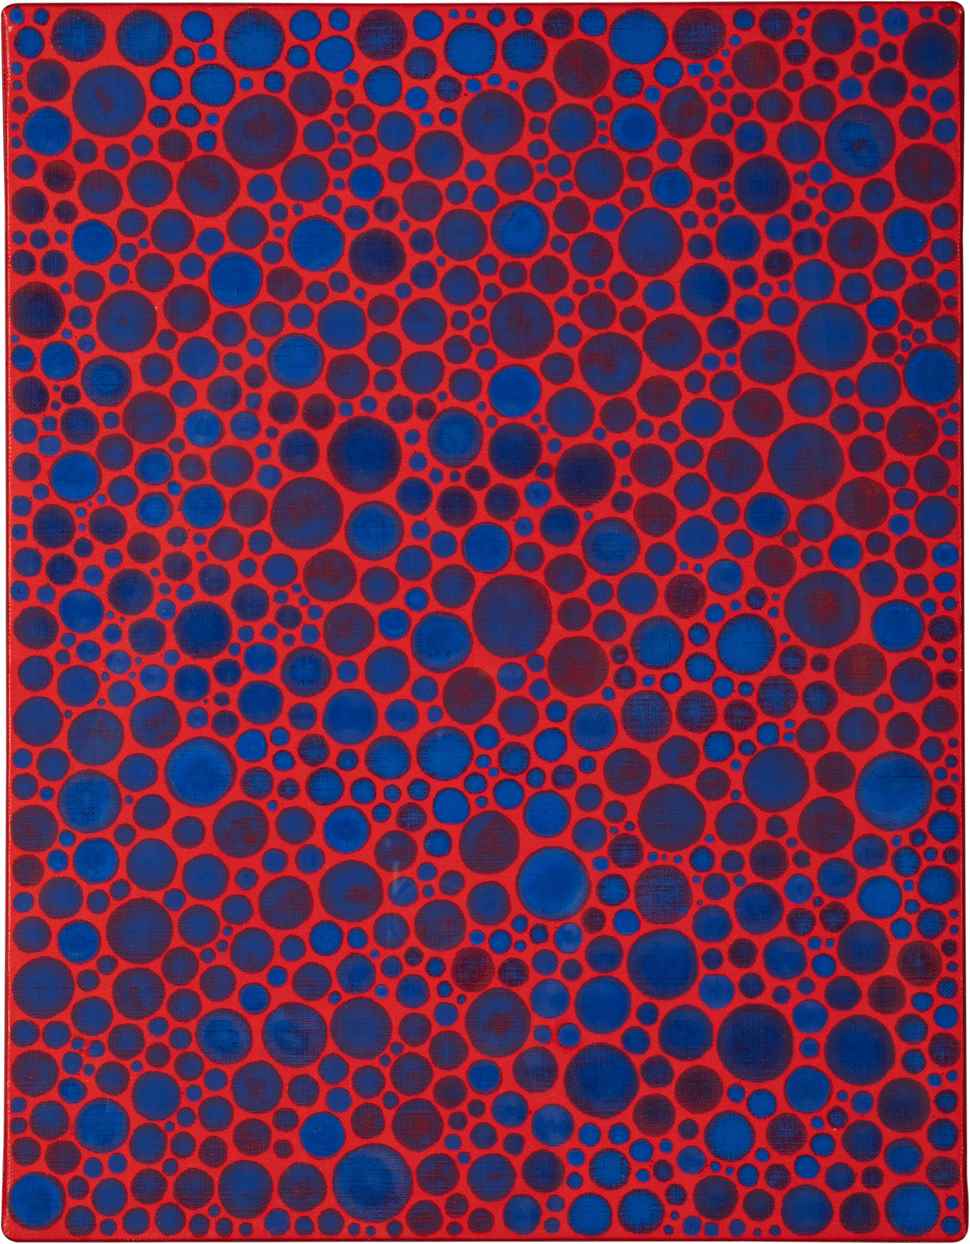 Dots-Obsession - Yayoi Kusama (b. 1929 - )